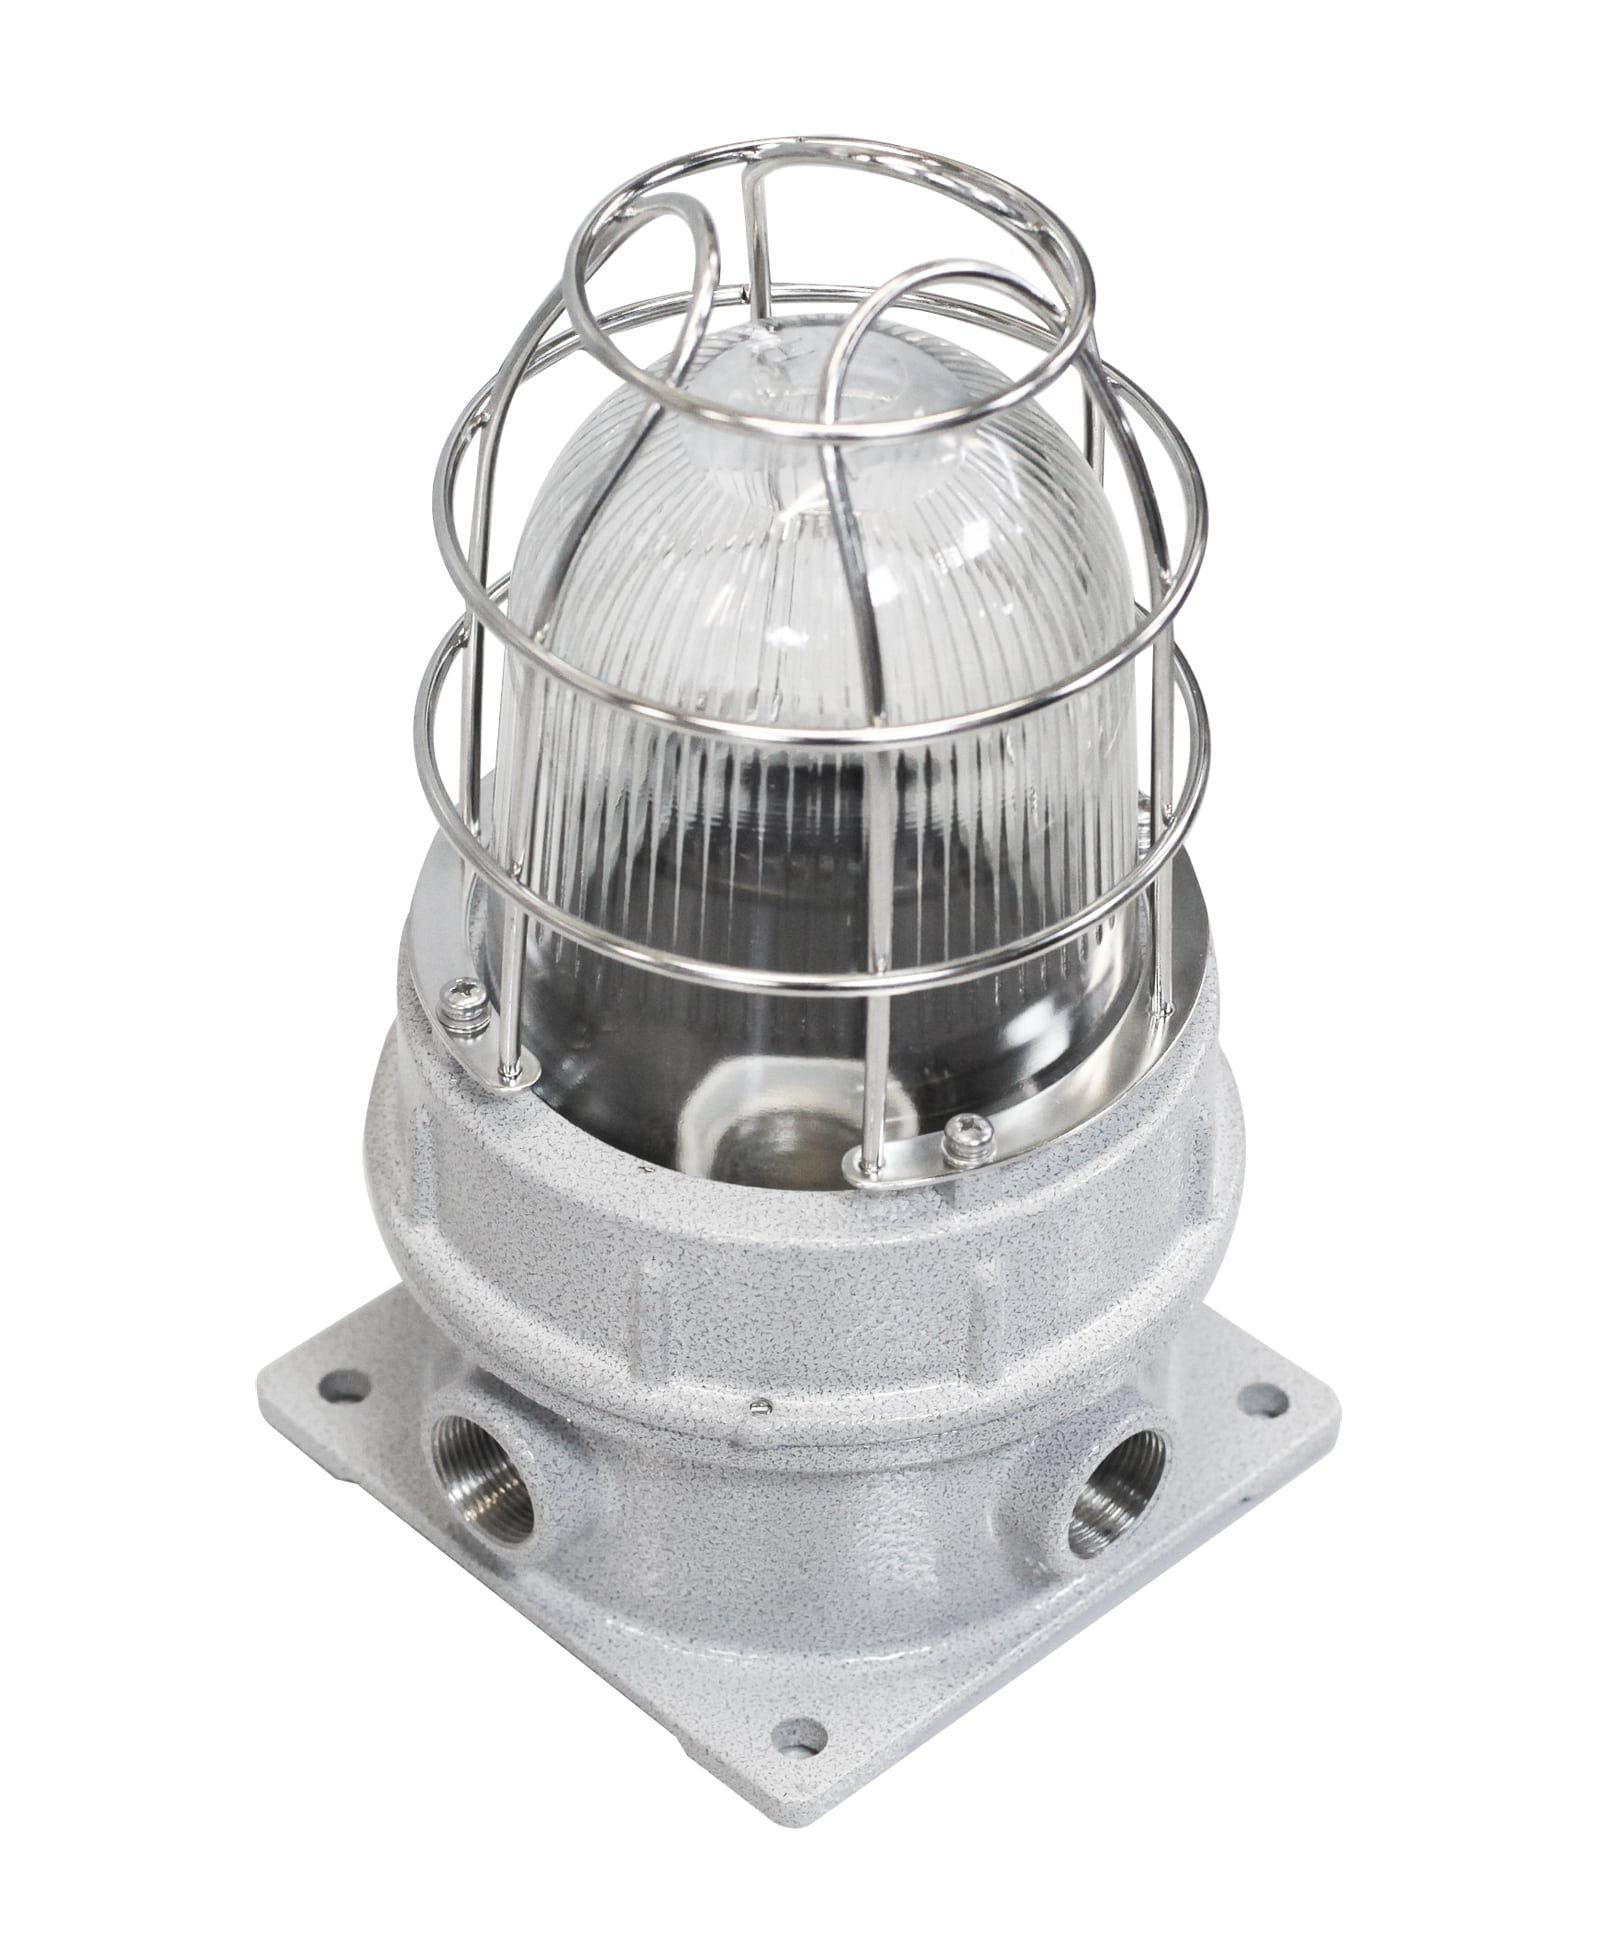 Светильники рудничные СГЖ01-М… для различных типов ламп с цоколем Е27 в корпусе из малоуглеродистой стали